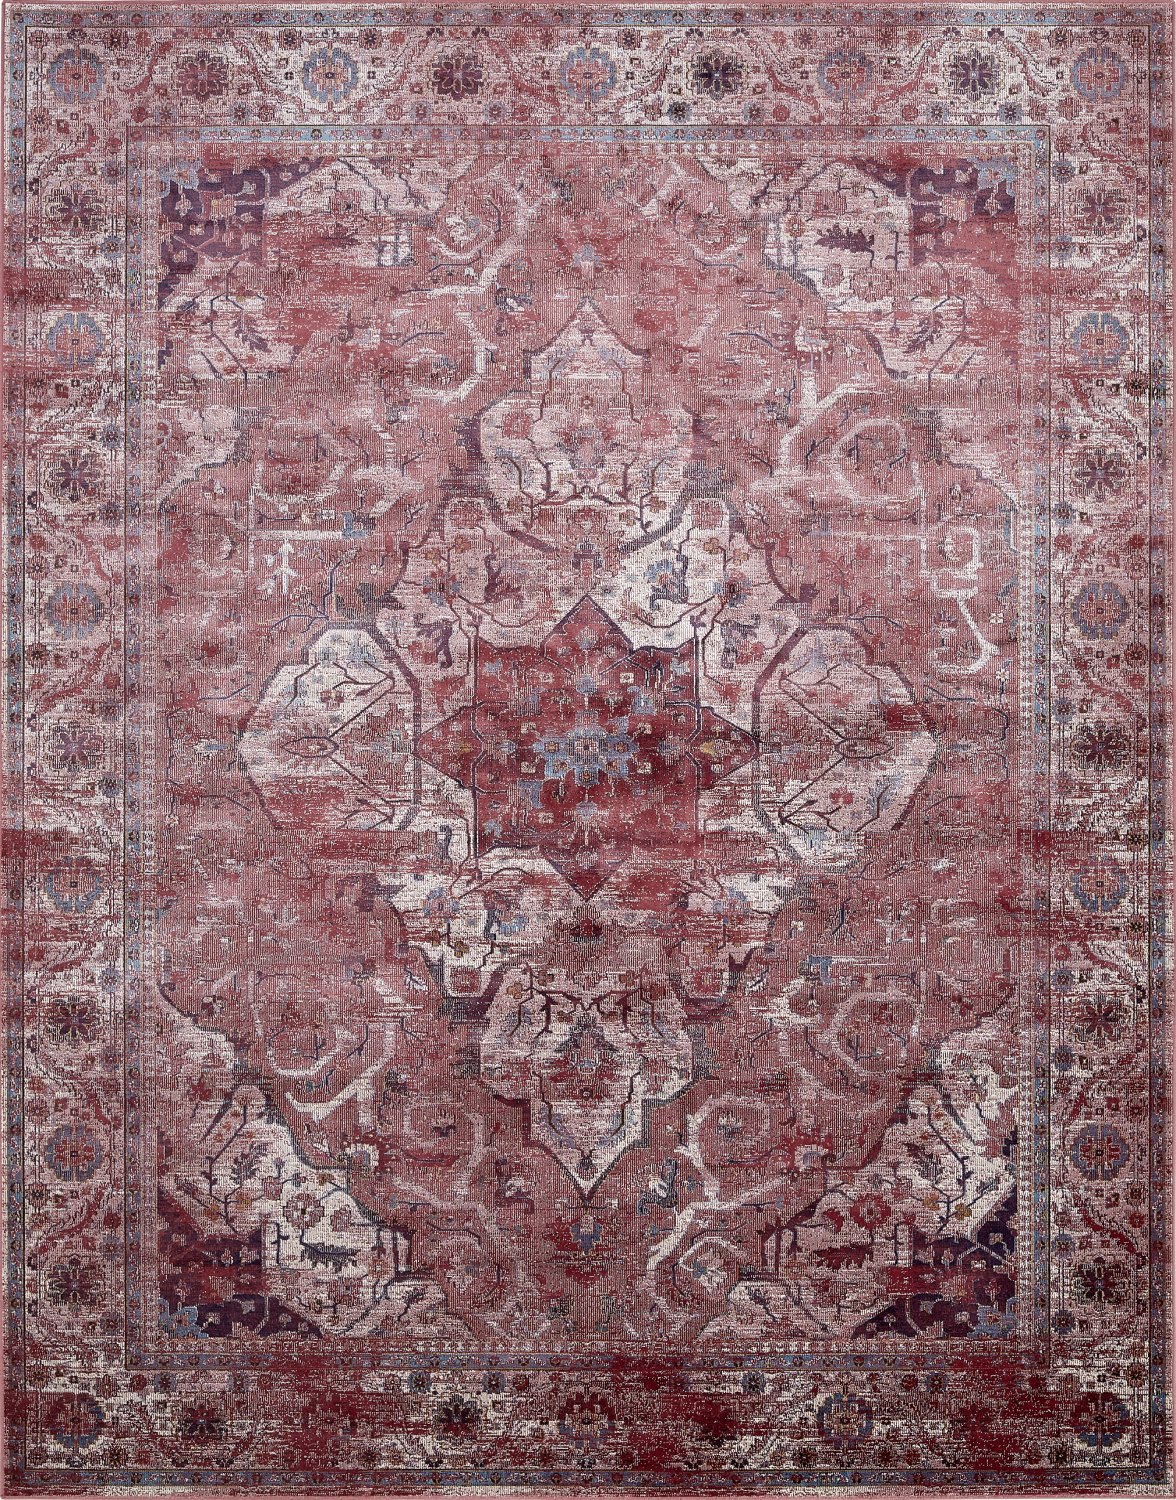 Roter Jacquard-Teppich mit orientalischem Muster | Vartian | Kurzflor-Teppiche